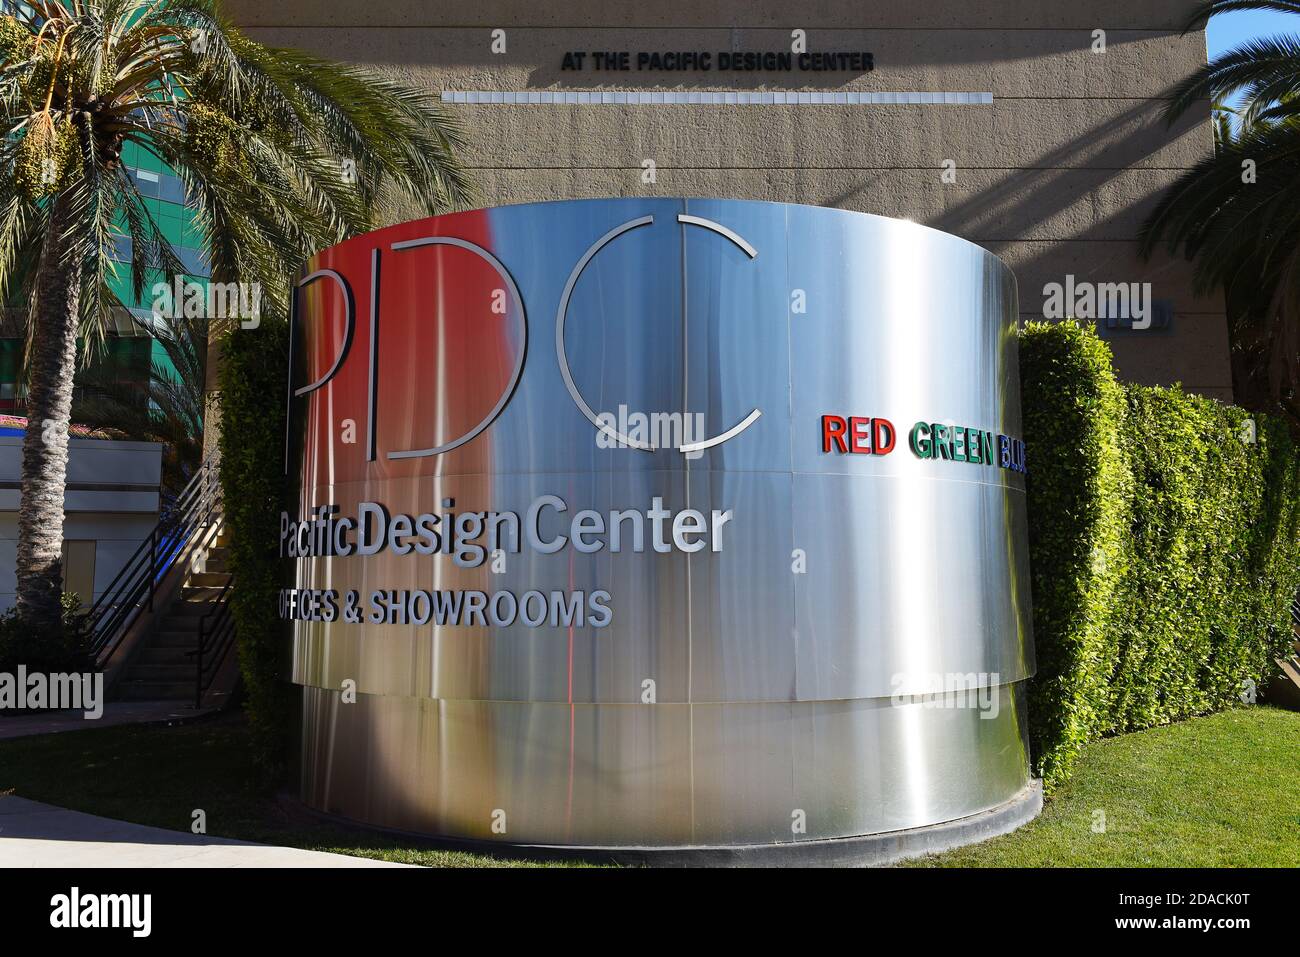 WEST HOLLYWOOD, CALIFORNIE - 10 NOVEMBRE 2020 : signez au Pacific Design Center une installation multi-usage pour la communauté du design, avec trois bâtiments en RVB, Banque D'Images